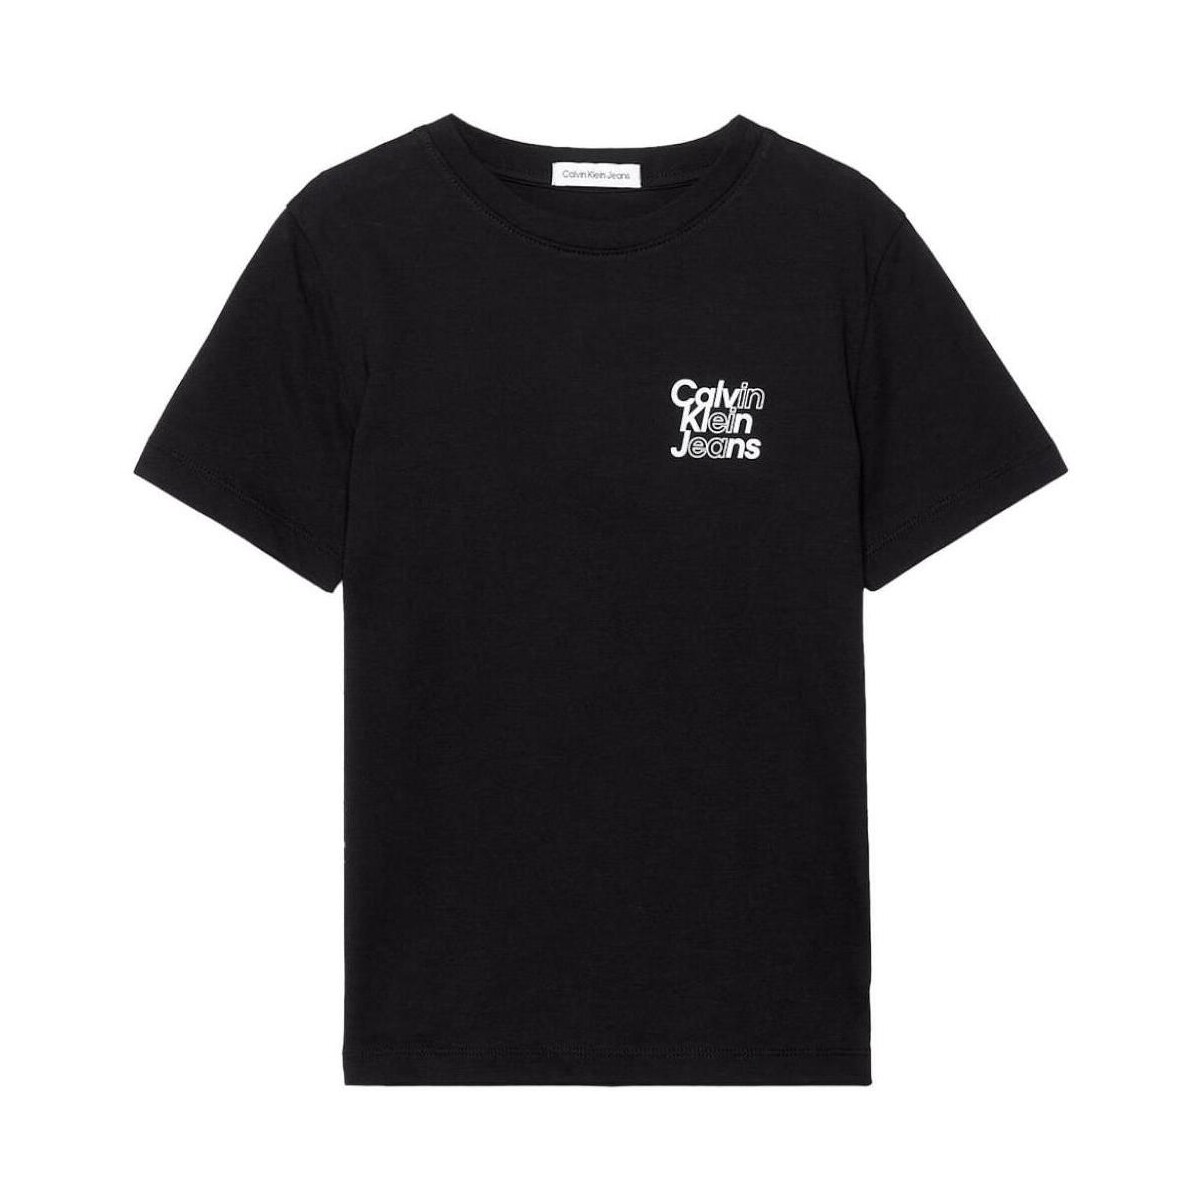 tekstylia Chłopiec T-shirty z krótkim rękawem Calvin Klein Jeans  Czarny